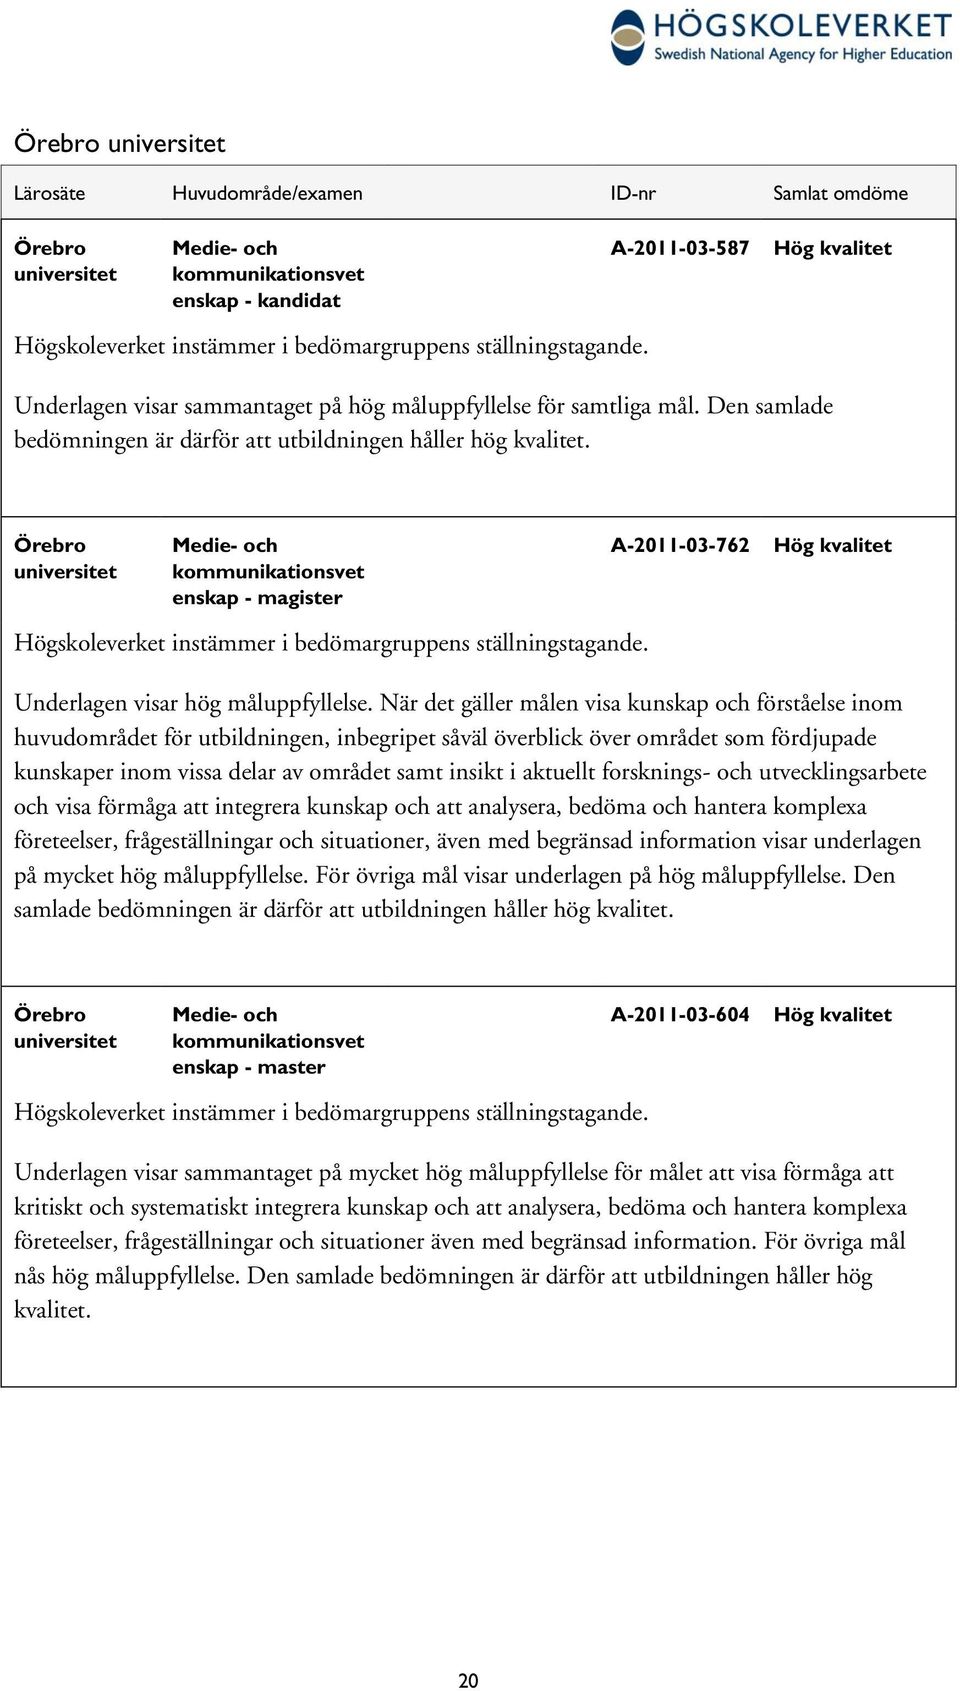 Örebro universitet Medie- och kommunikationsvet enskap - magister Högskoleverket instämmer i bedömargruppens ställningstagande. A-2011-03-762 Hög kvalitet Underlagen visar hög måluppfyllelse.